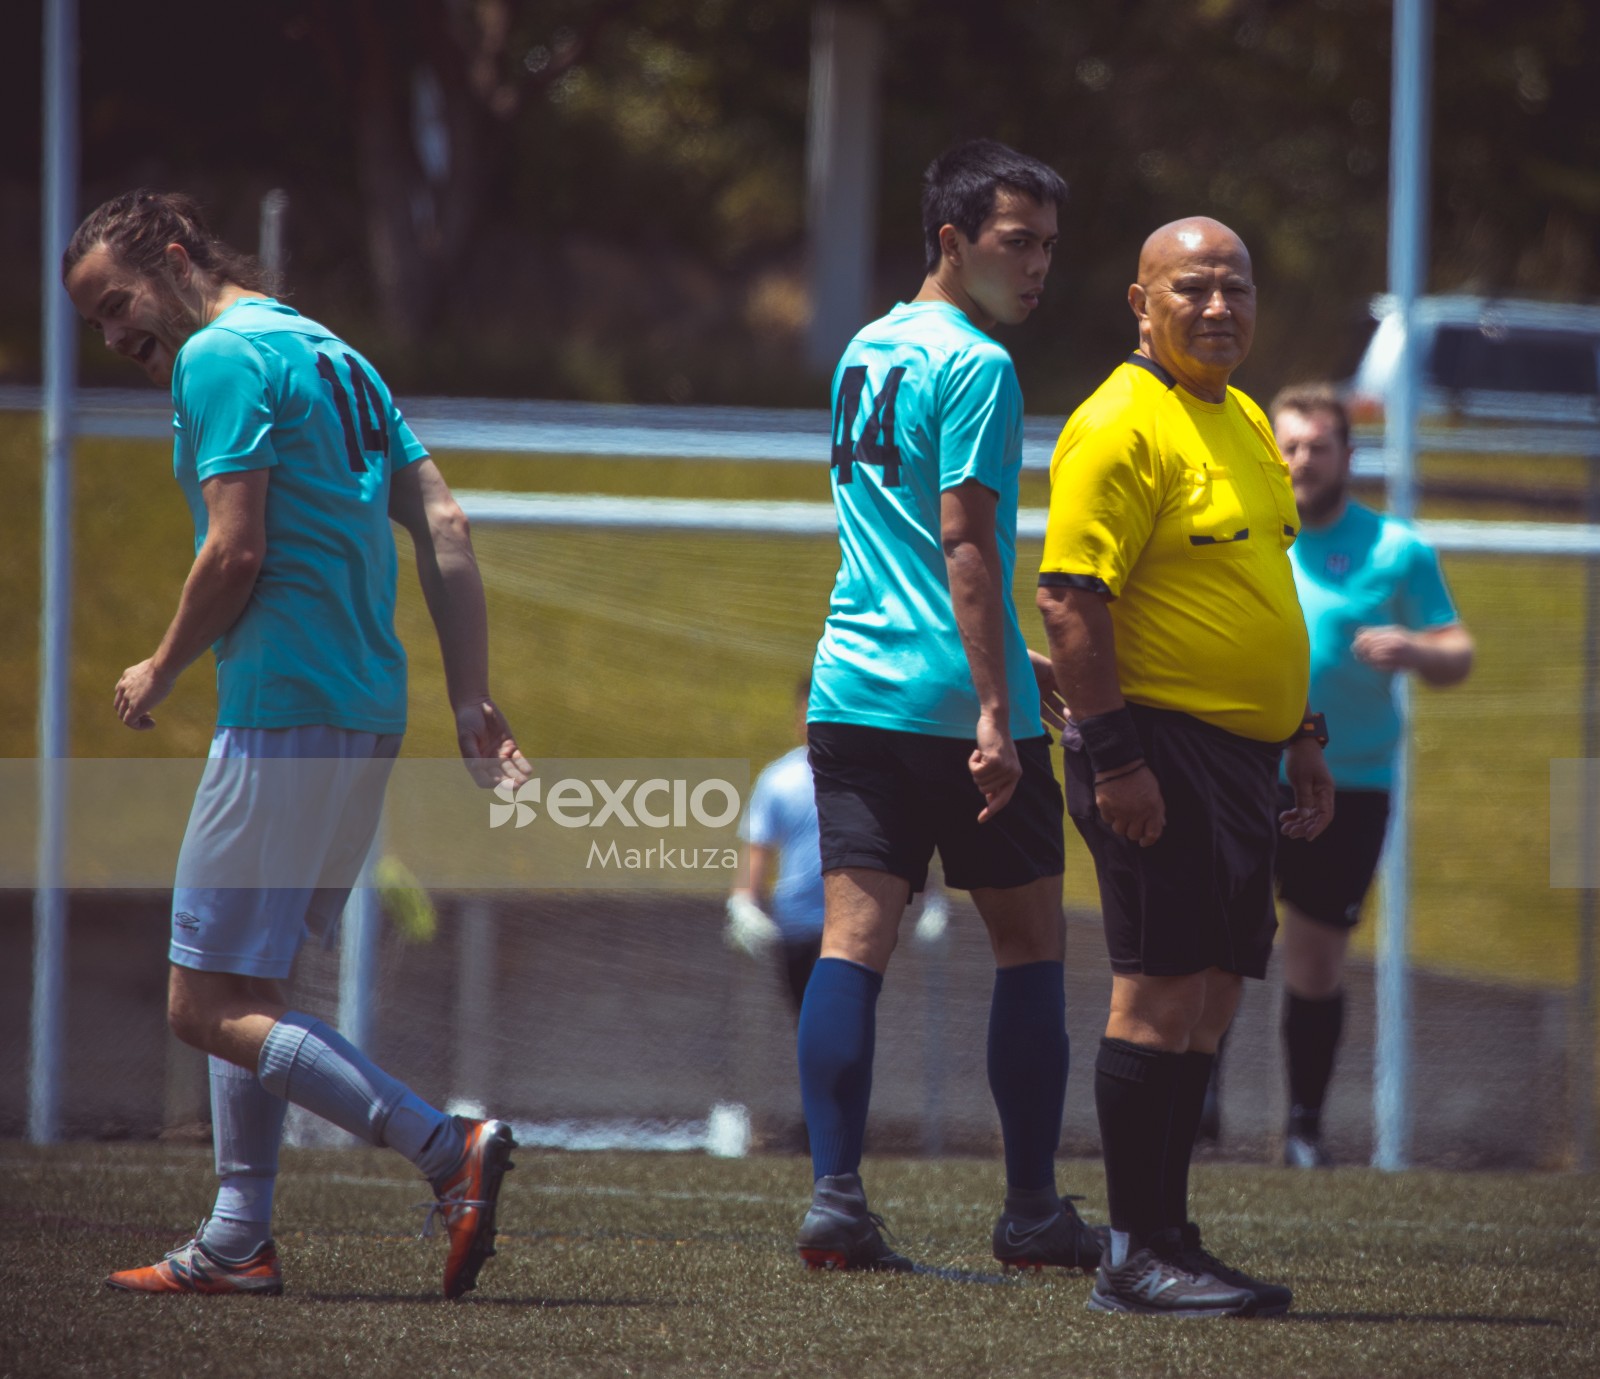 Bald referee wearing yellow shirt - Sports Zone sunday league